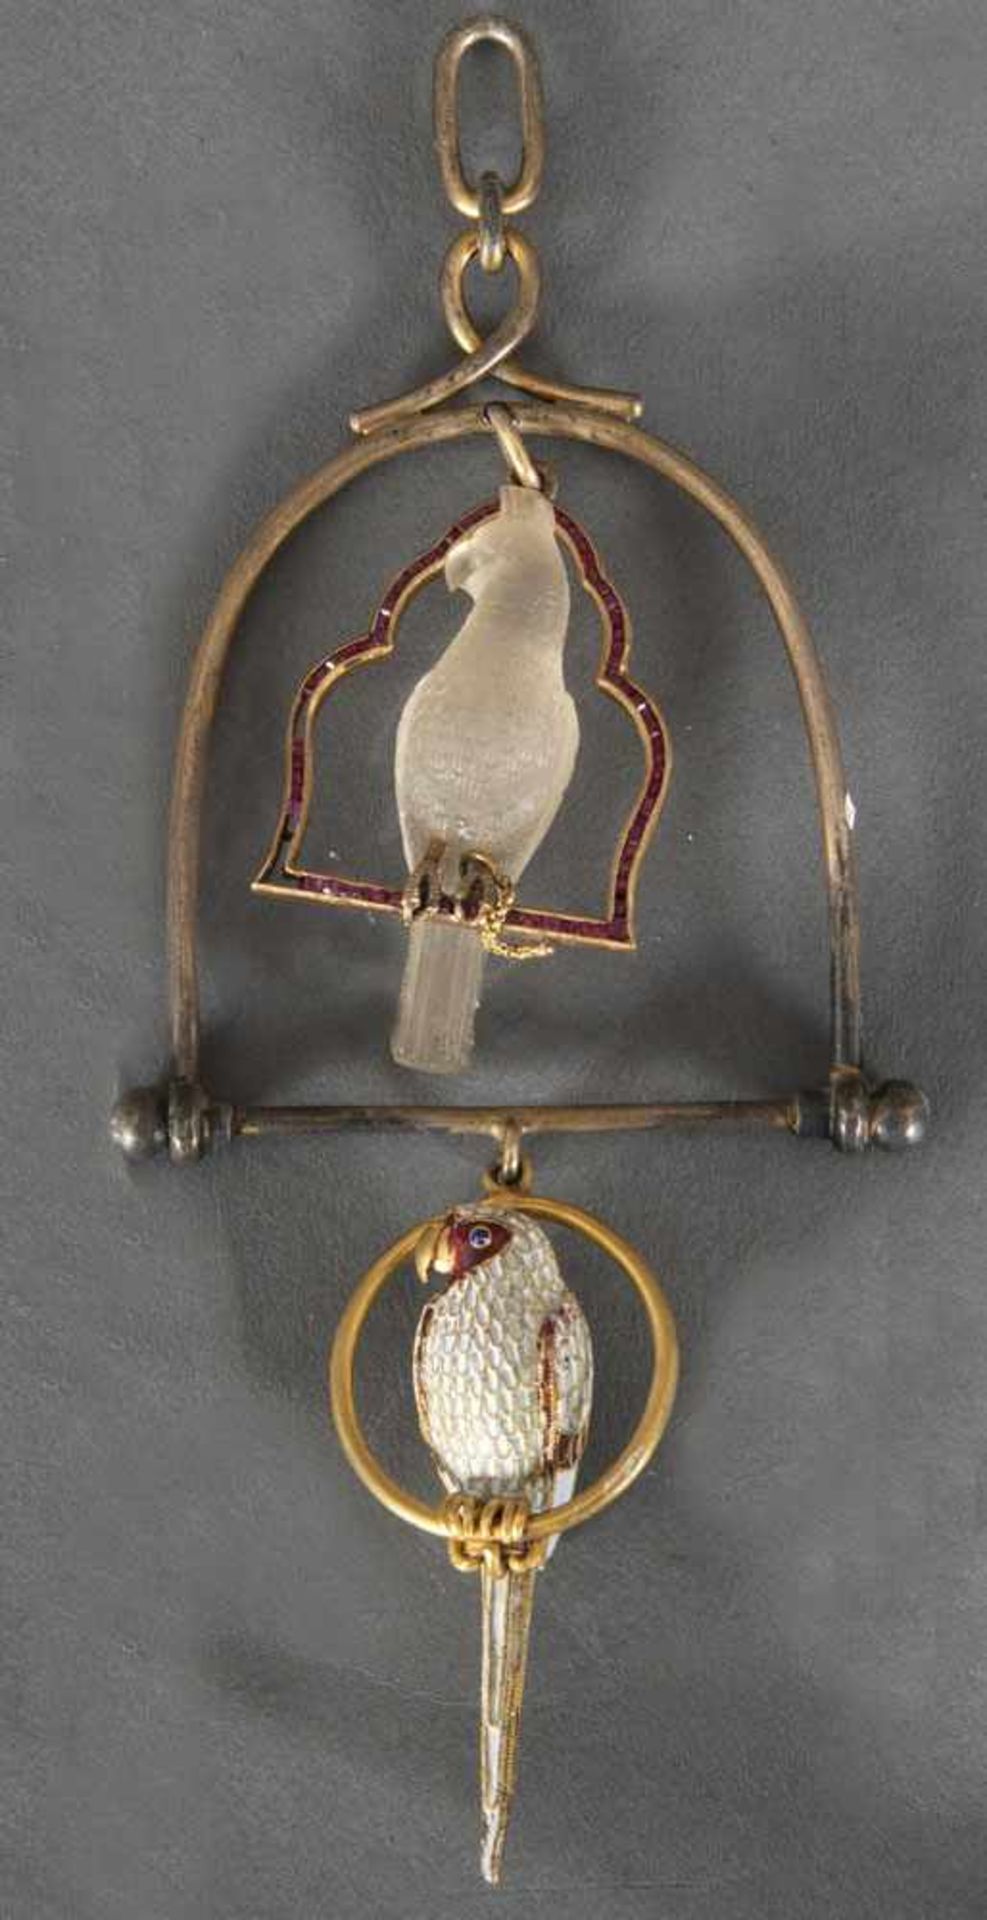 Zier-Vogelkäfig. Paris 19. Jh., Silbergestell, bunt emailliert und besetzt mit vier herzförmigen - Bild 2 aus 2